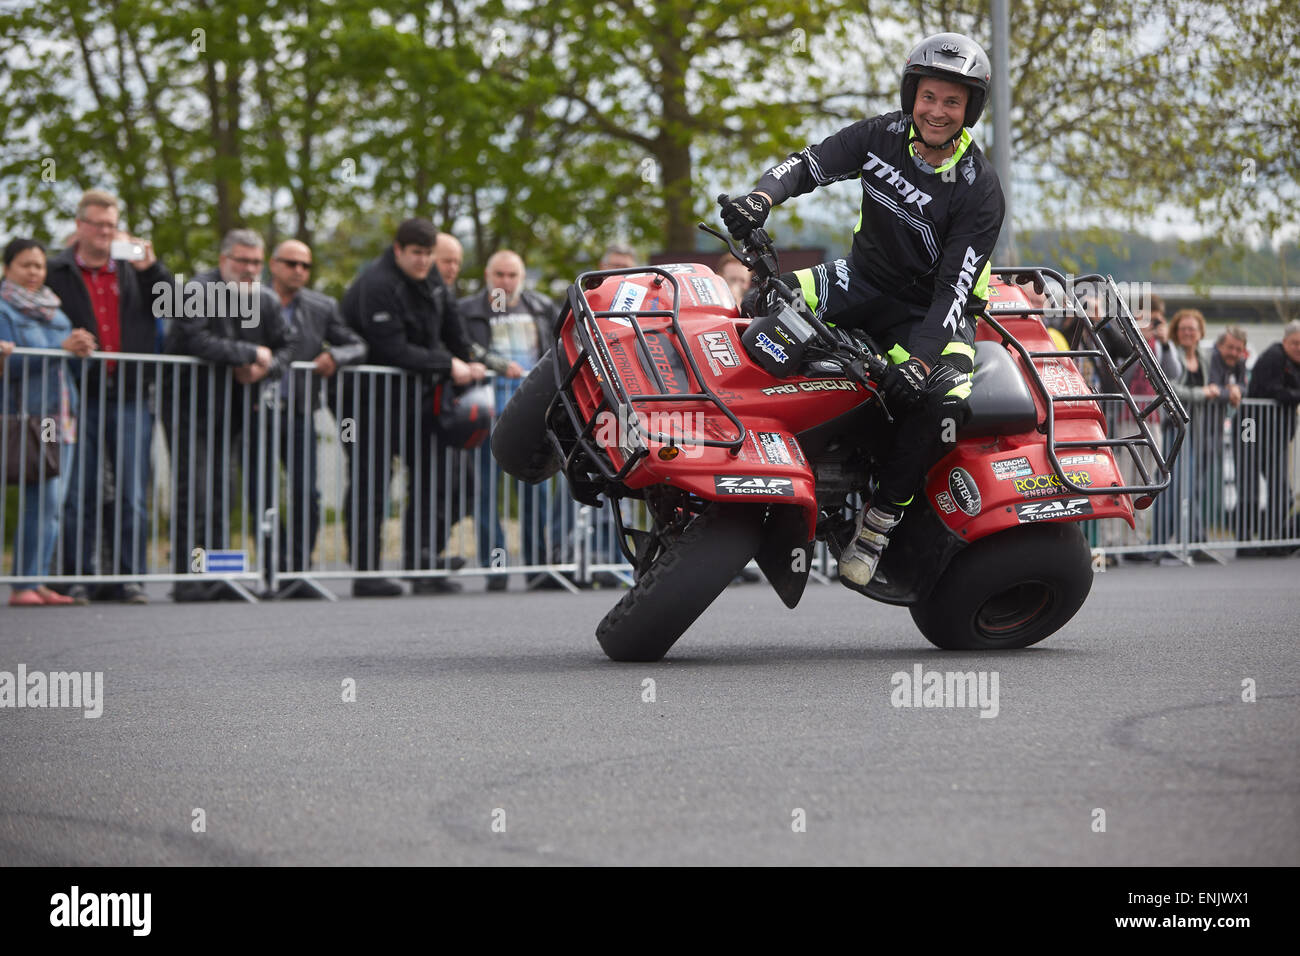 Stuntman Mike Auffenberg moto sur quad moto ADAC au cours de la journée de démarrage, Koblenz, Rhénanie-Palatinat, Allemagne Banque D'Images